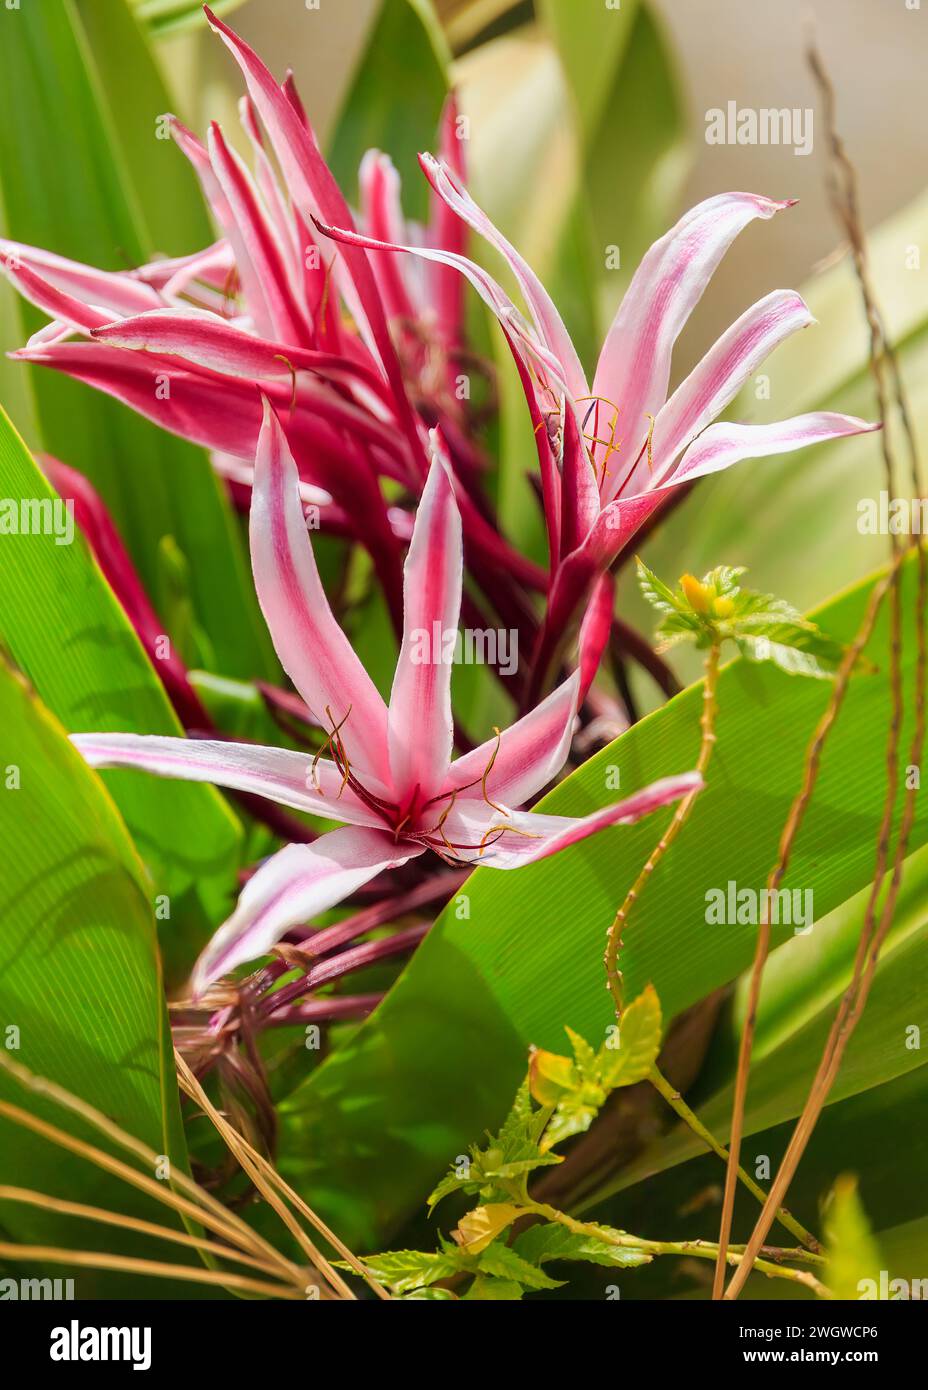 Nahaufnahme eines Crinum asiaticum, einer einheimischen Lilie aus Kap Verde. Hochwertige Fotos Stockfoto